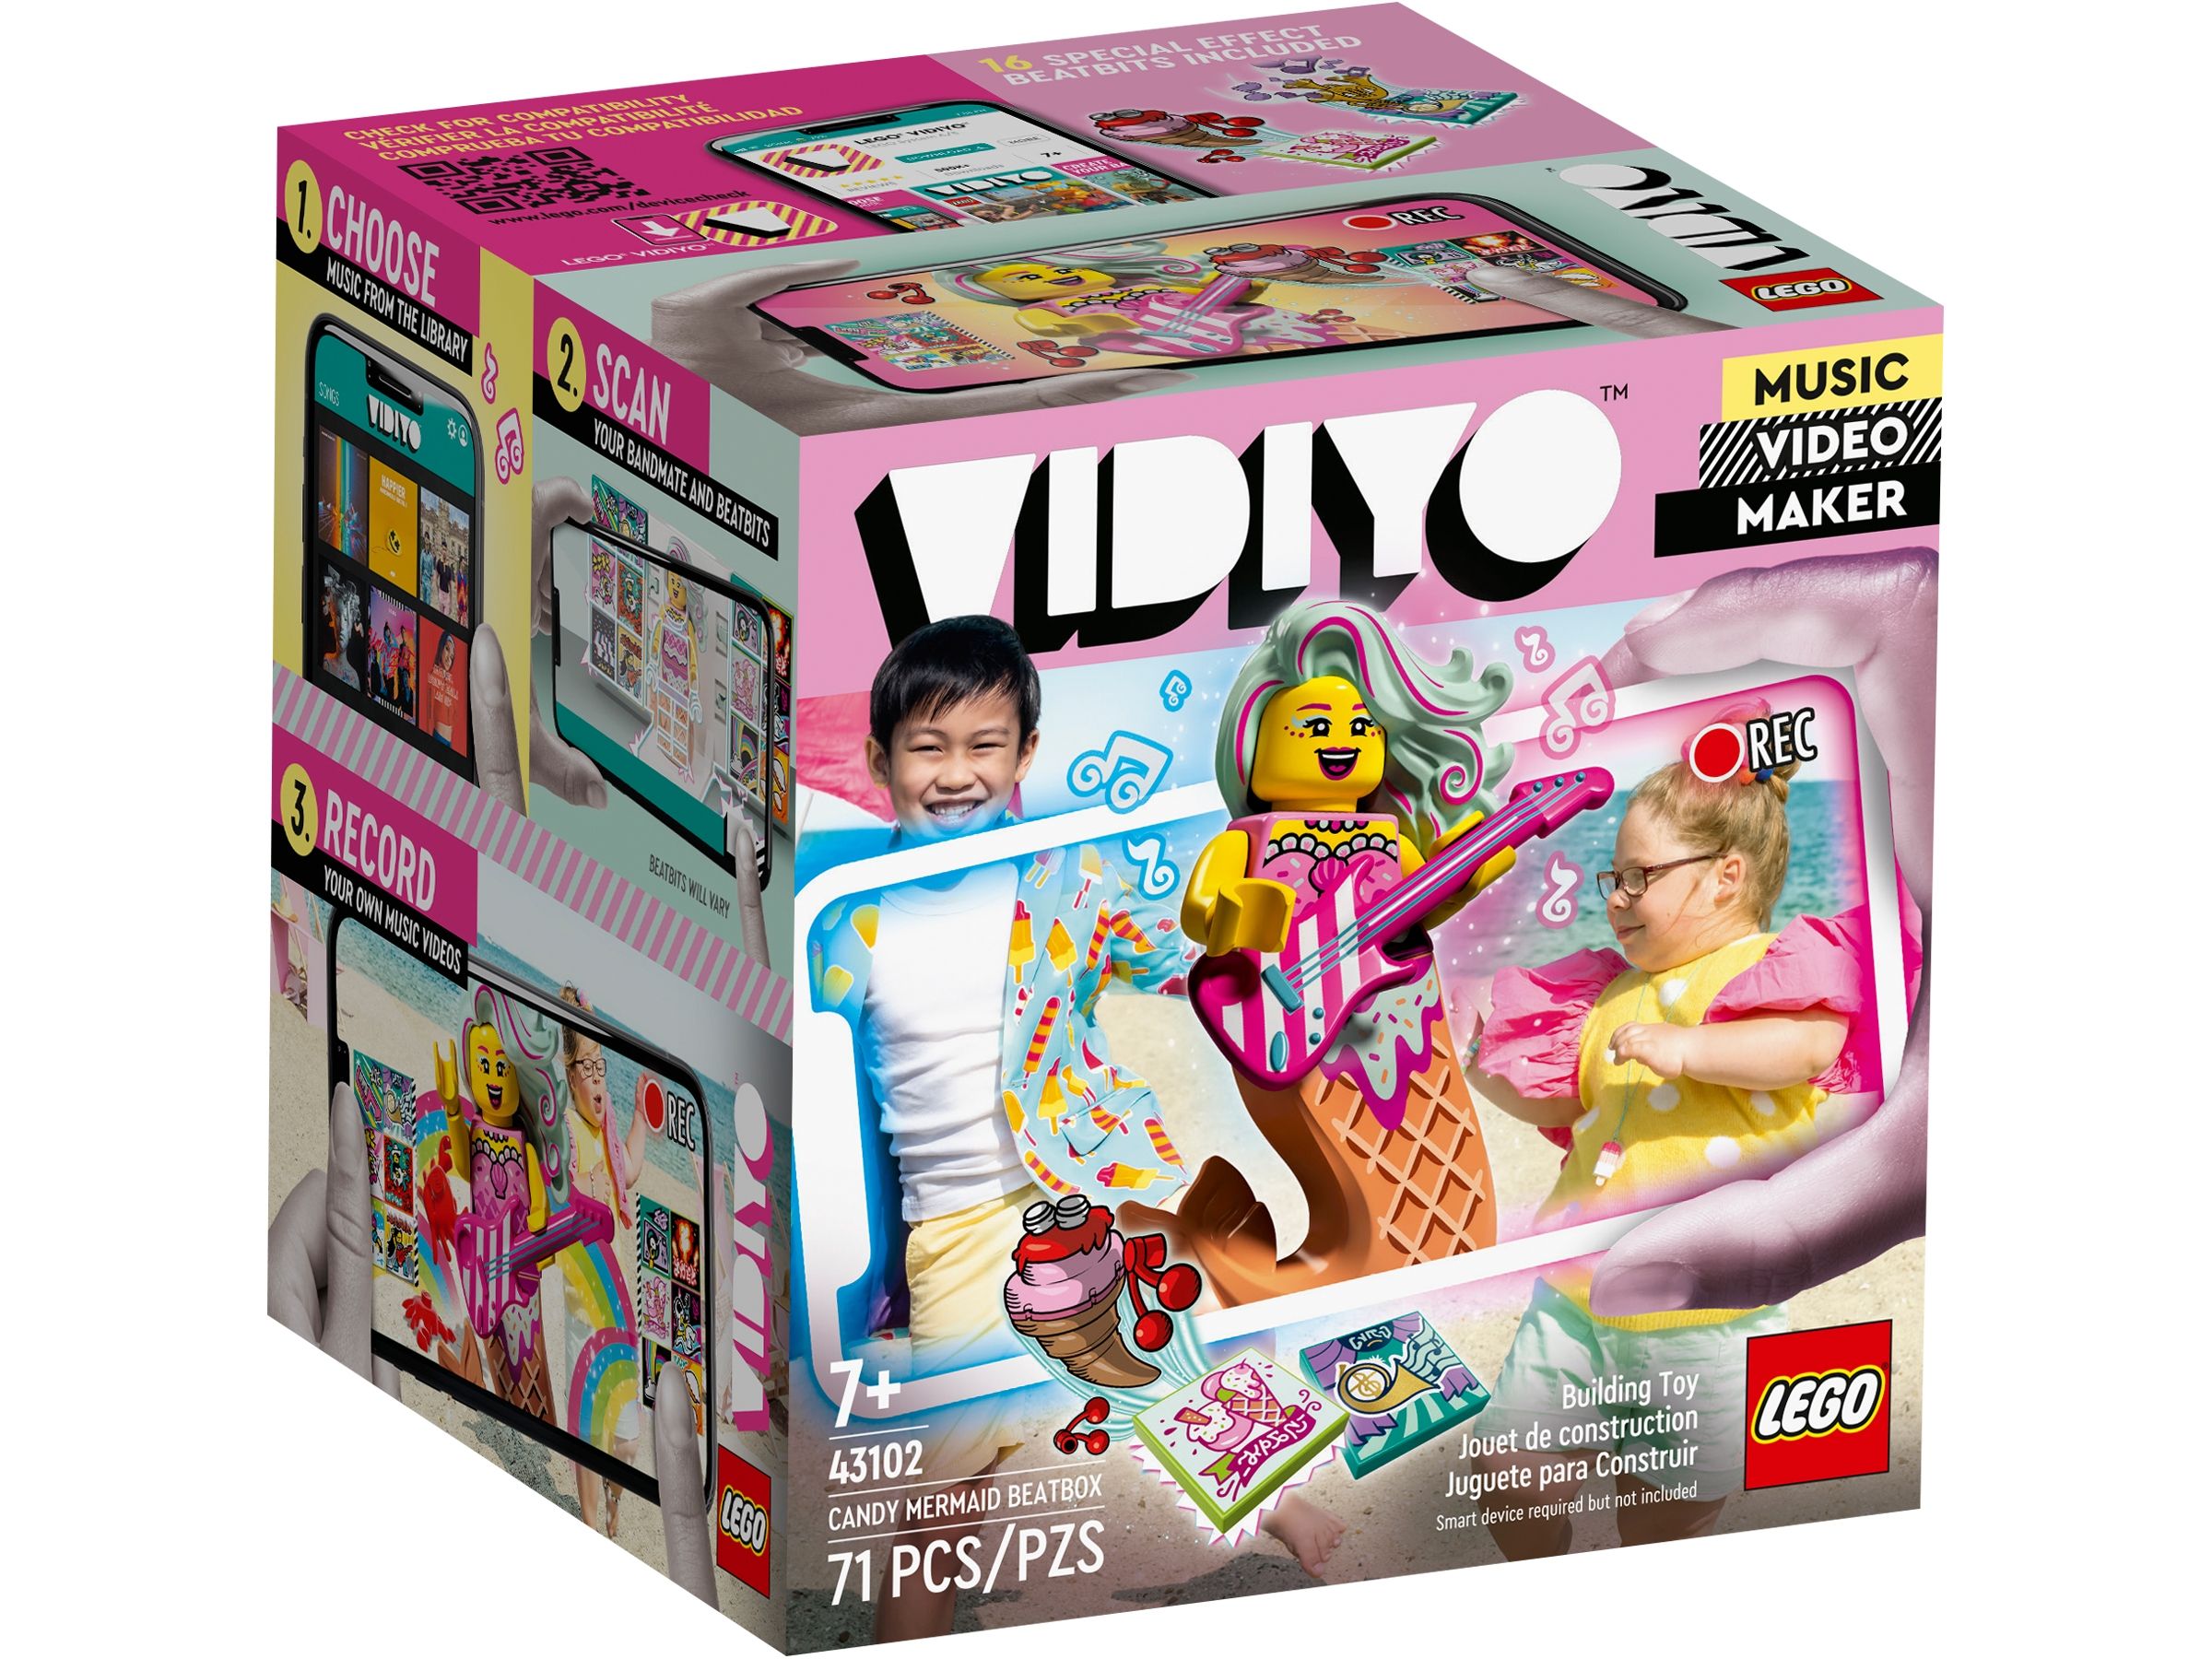 LEGO Vidiyo 43102 Candy Mermaid BeatBox LEGO_43102_alt1.jpg